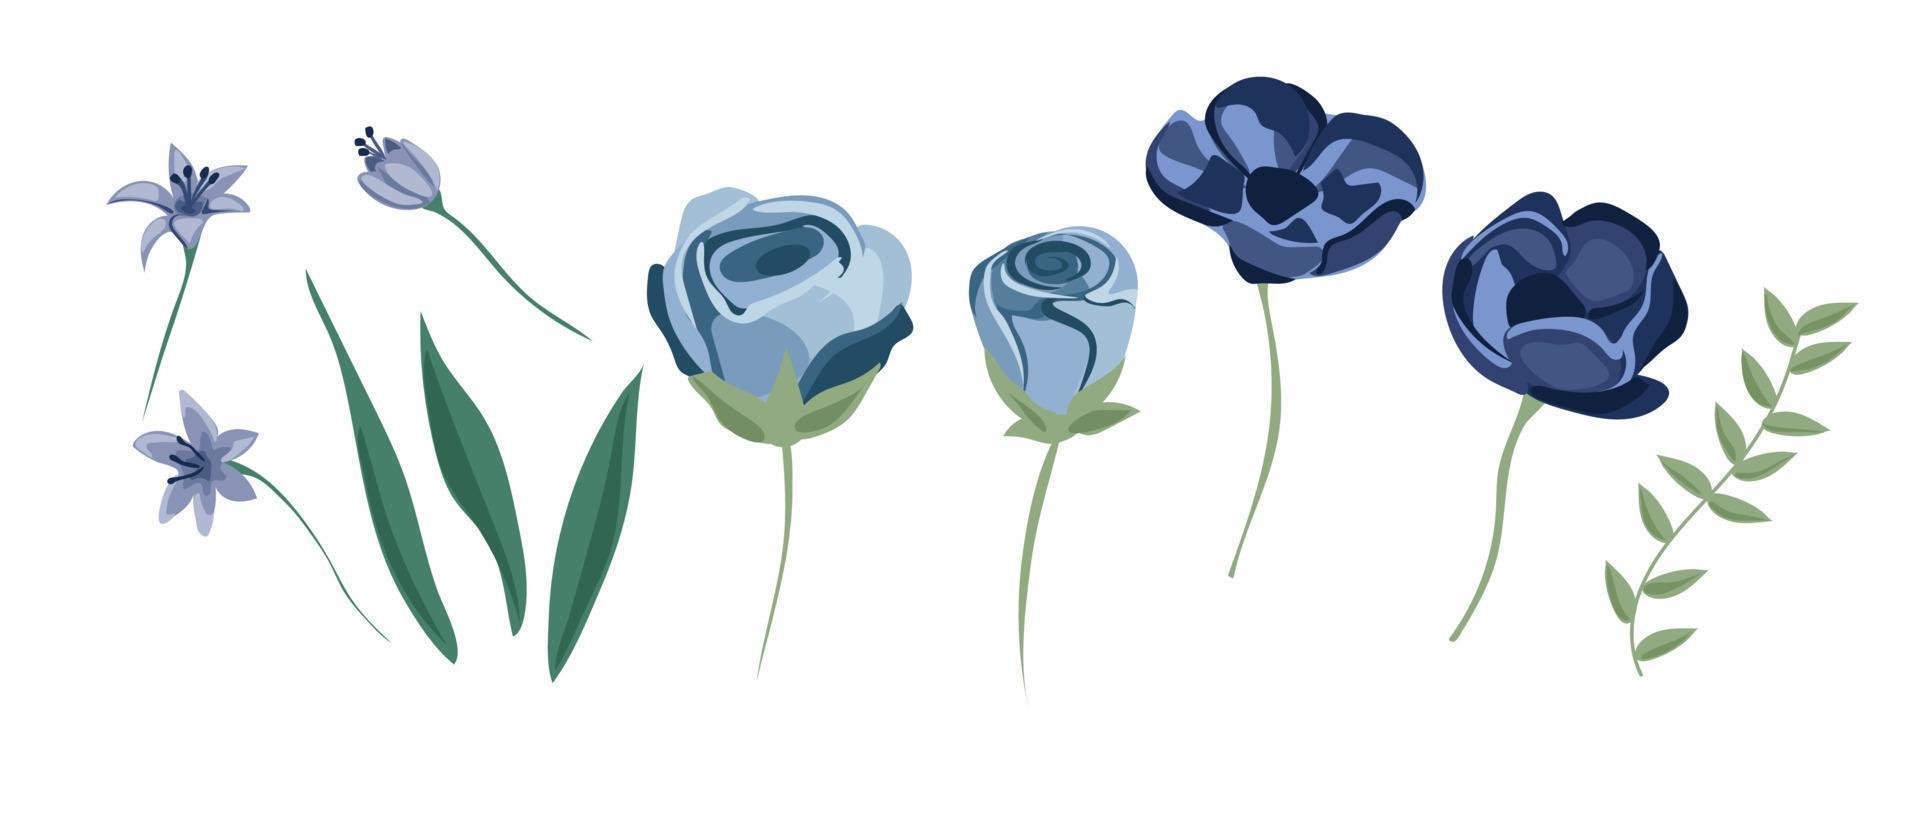 dammig blå, blek lila reste sig, vit hortensia, ranunkel, iris, echeveria saftig, blommor, grönska och eukalyptus, bär, enbär stor vektor set.trendig pastell Färg samling.